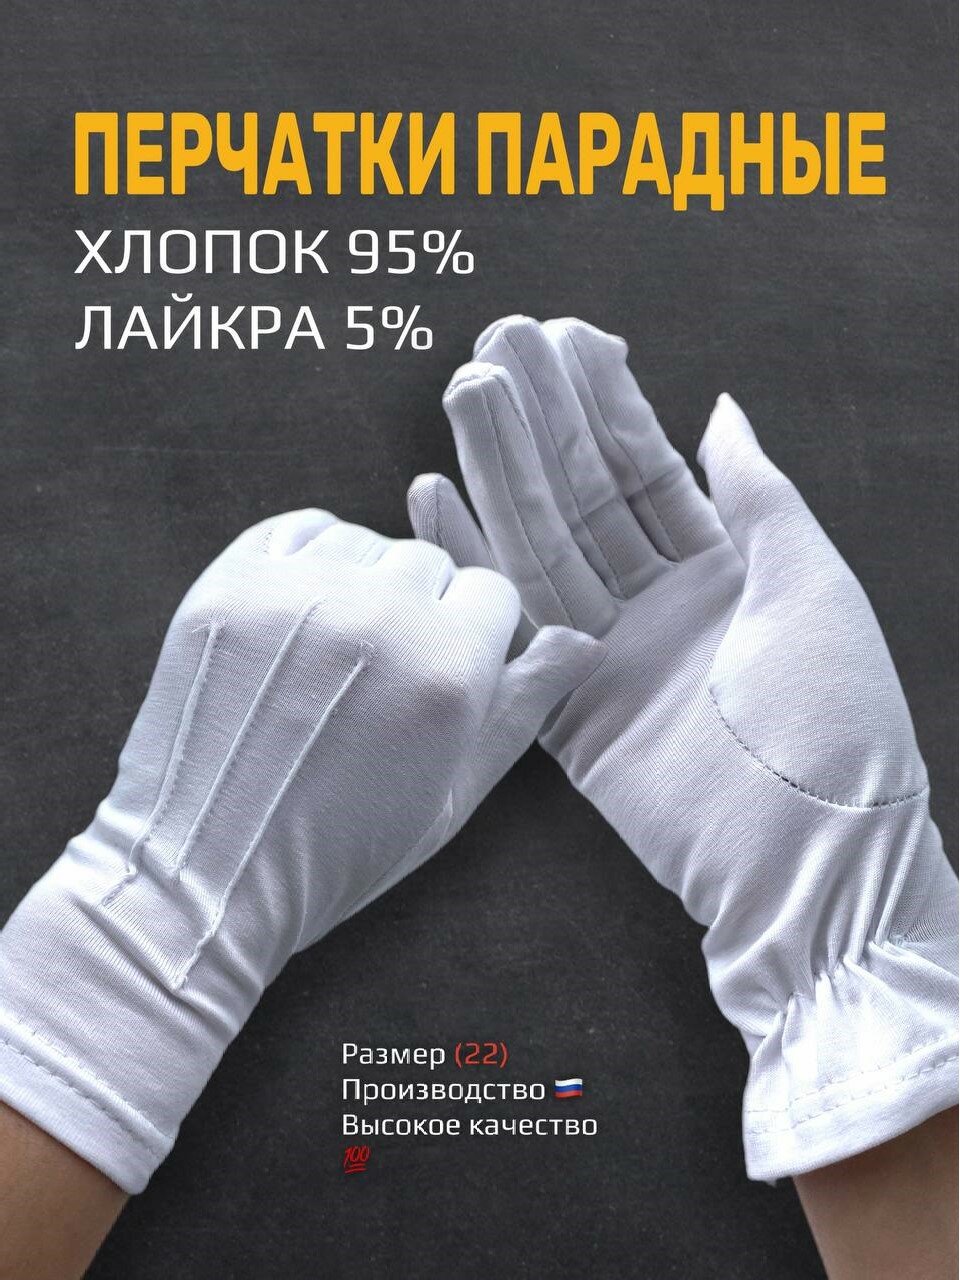 Перчатки белые парадные (22)